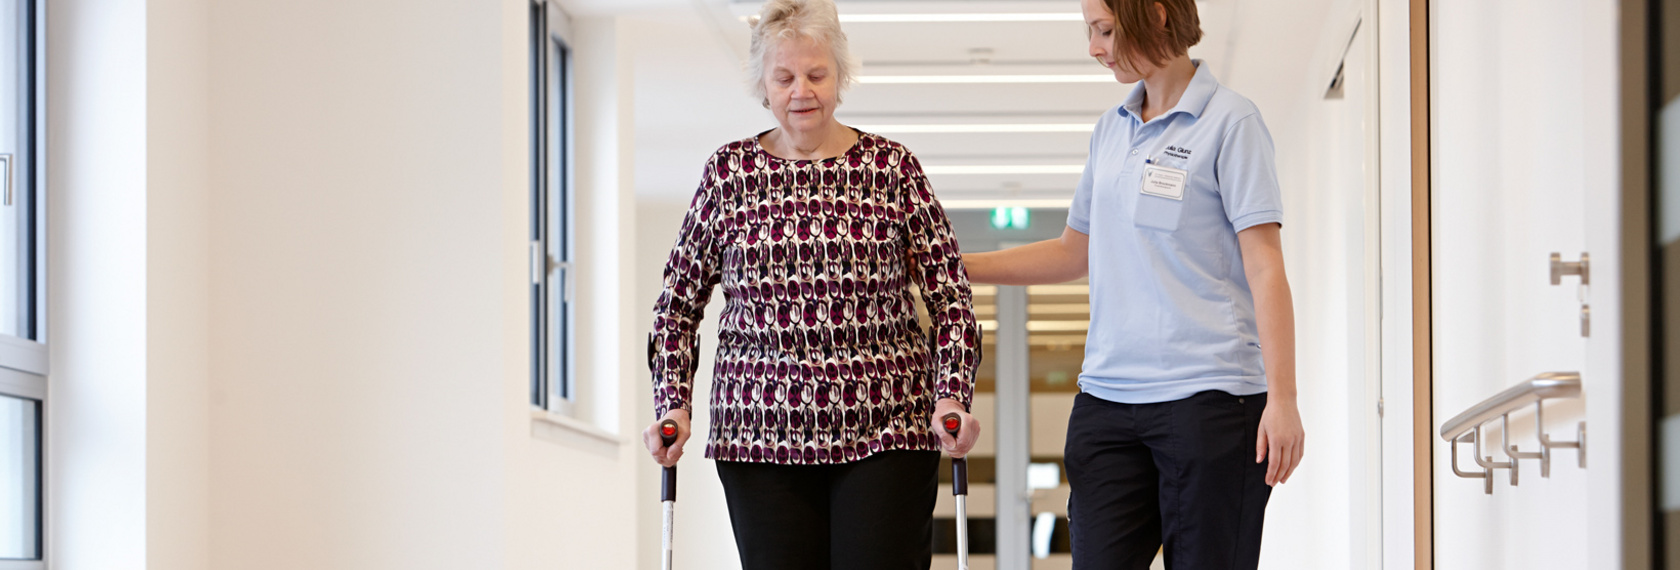 Eine Patientin übt das Gehen durch Unterstützung einer Physiotherapeutin